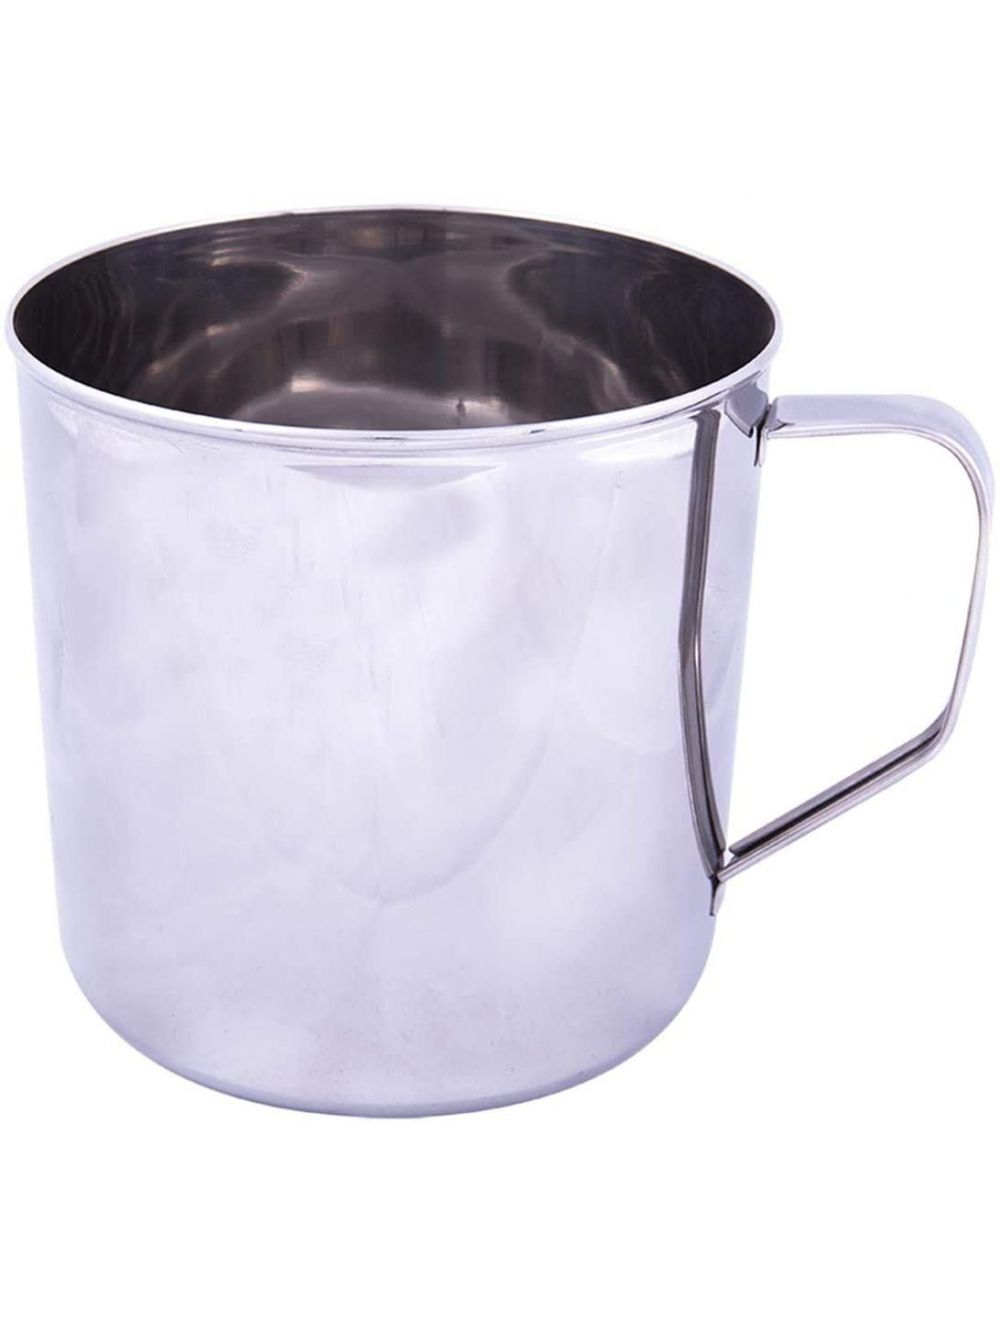 Raj 14 cm Stainless Steel Mug, Silver-NM0014